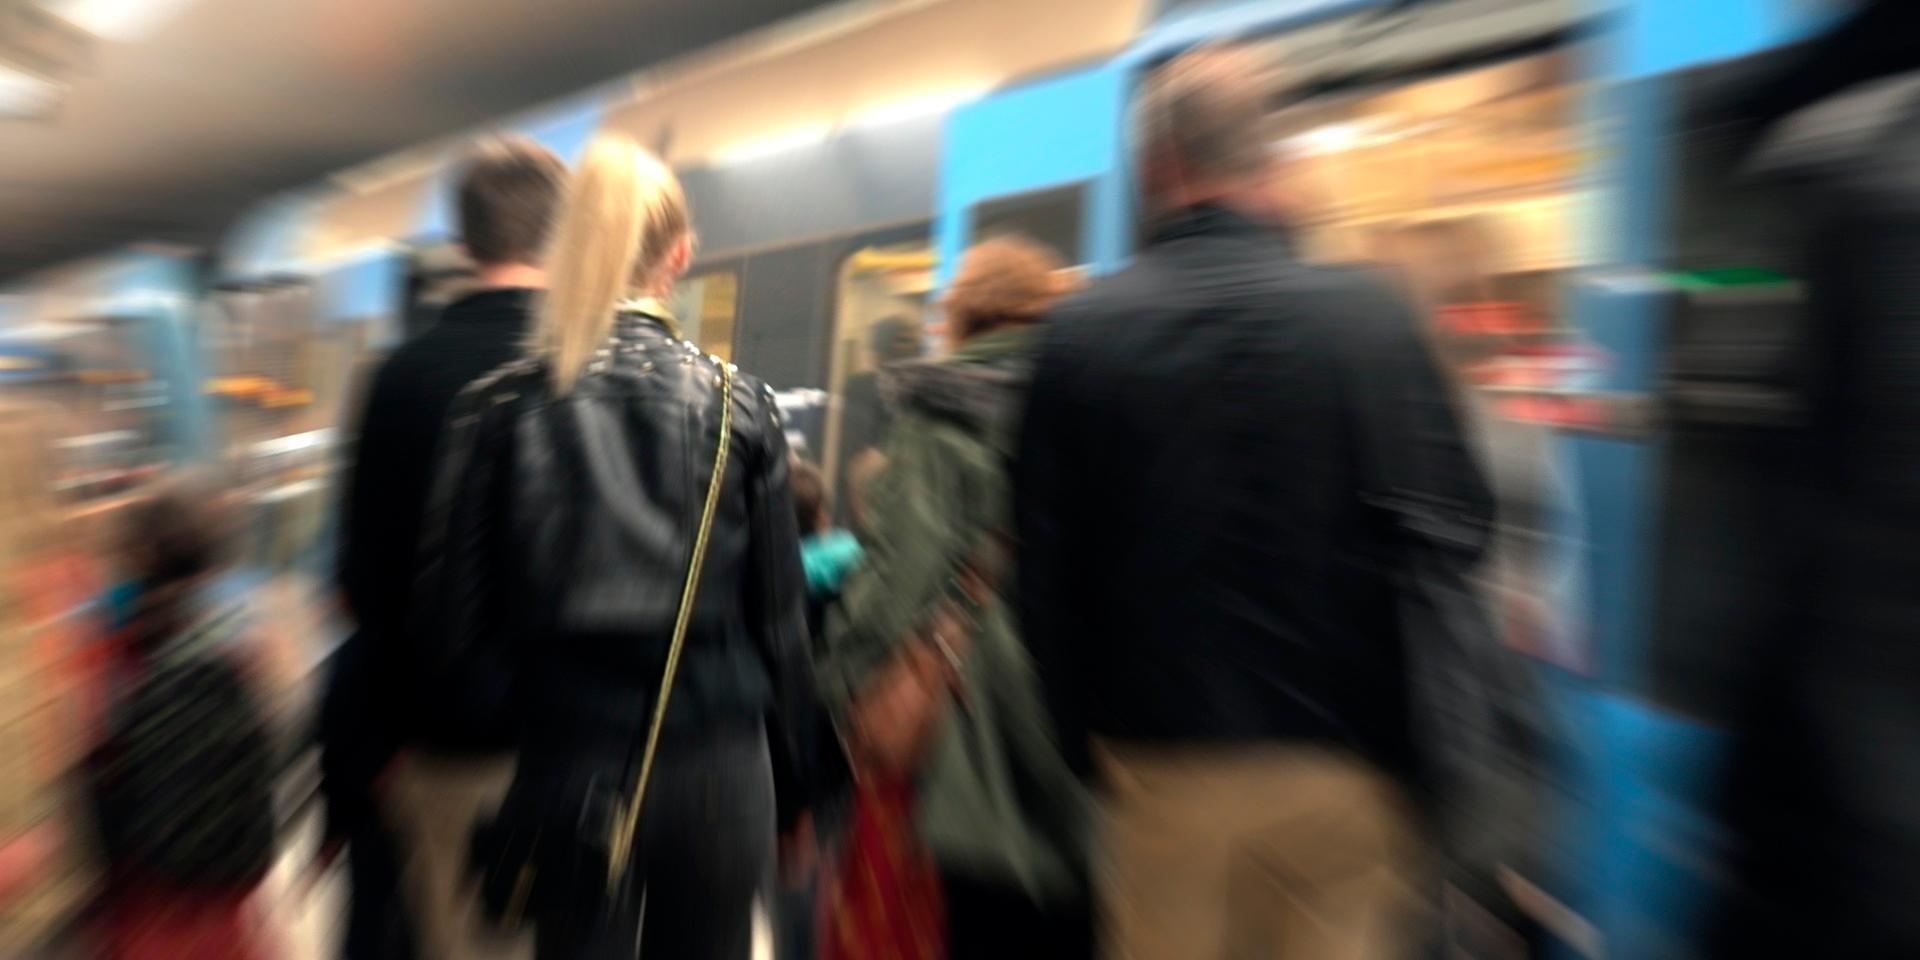 Det myllrar som vanligt av stressade människor vid Slussens T-banestation. Och det finns något kokett över stockholmarnas självbild, noterar GP:s kulturchef Björn Werner.